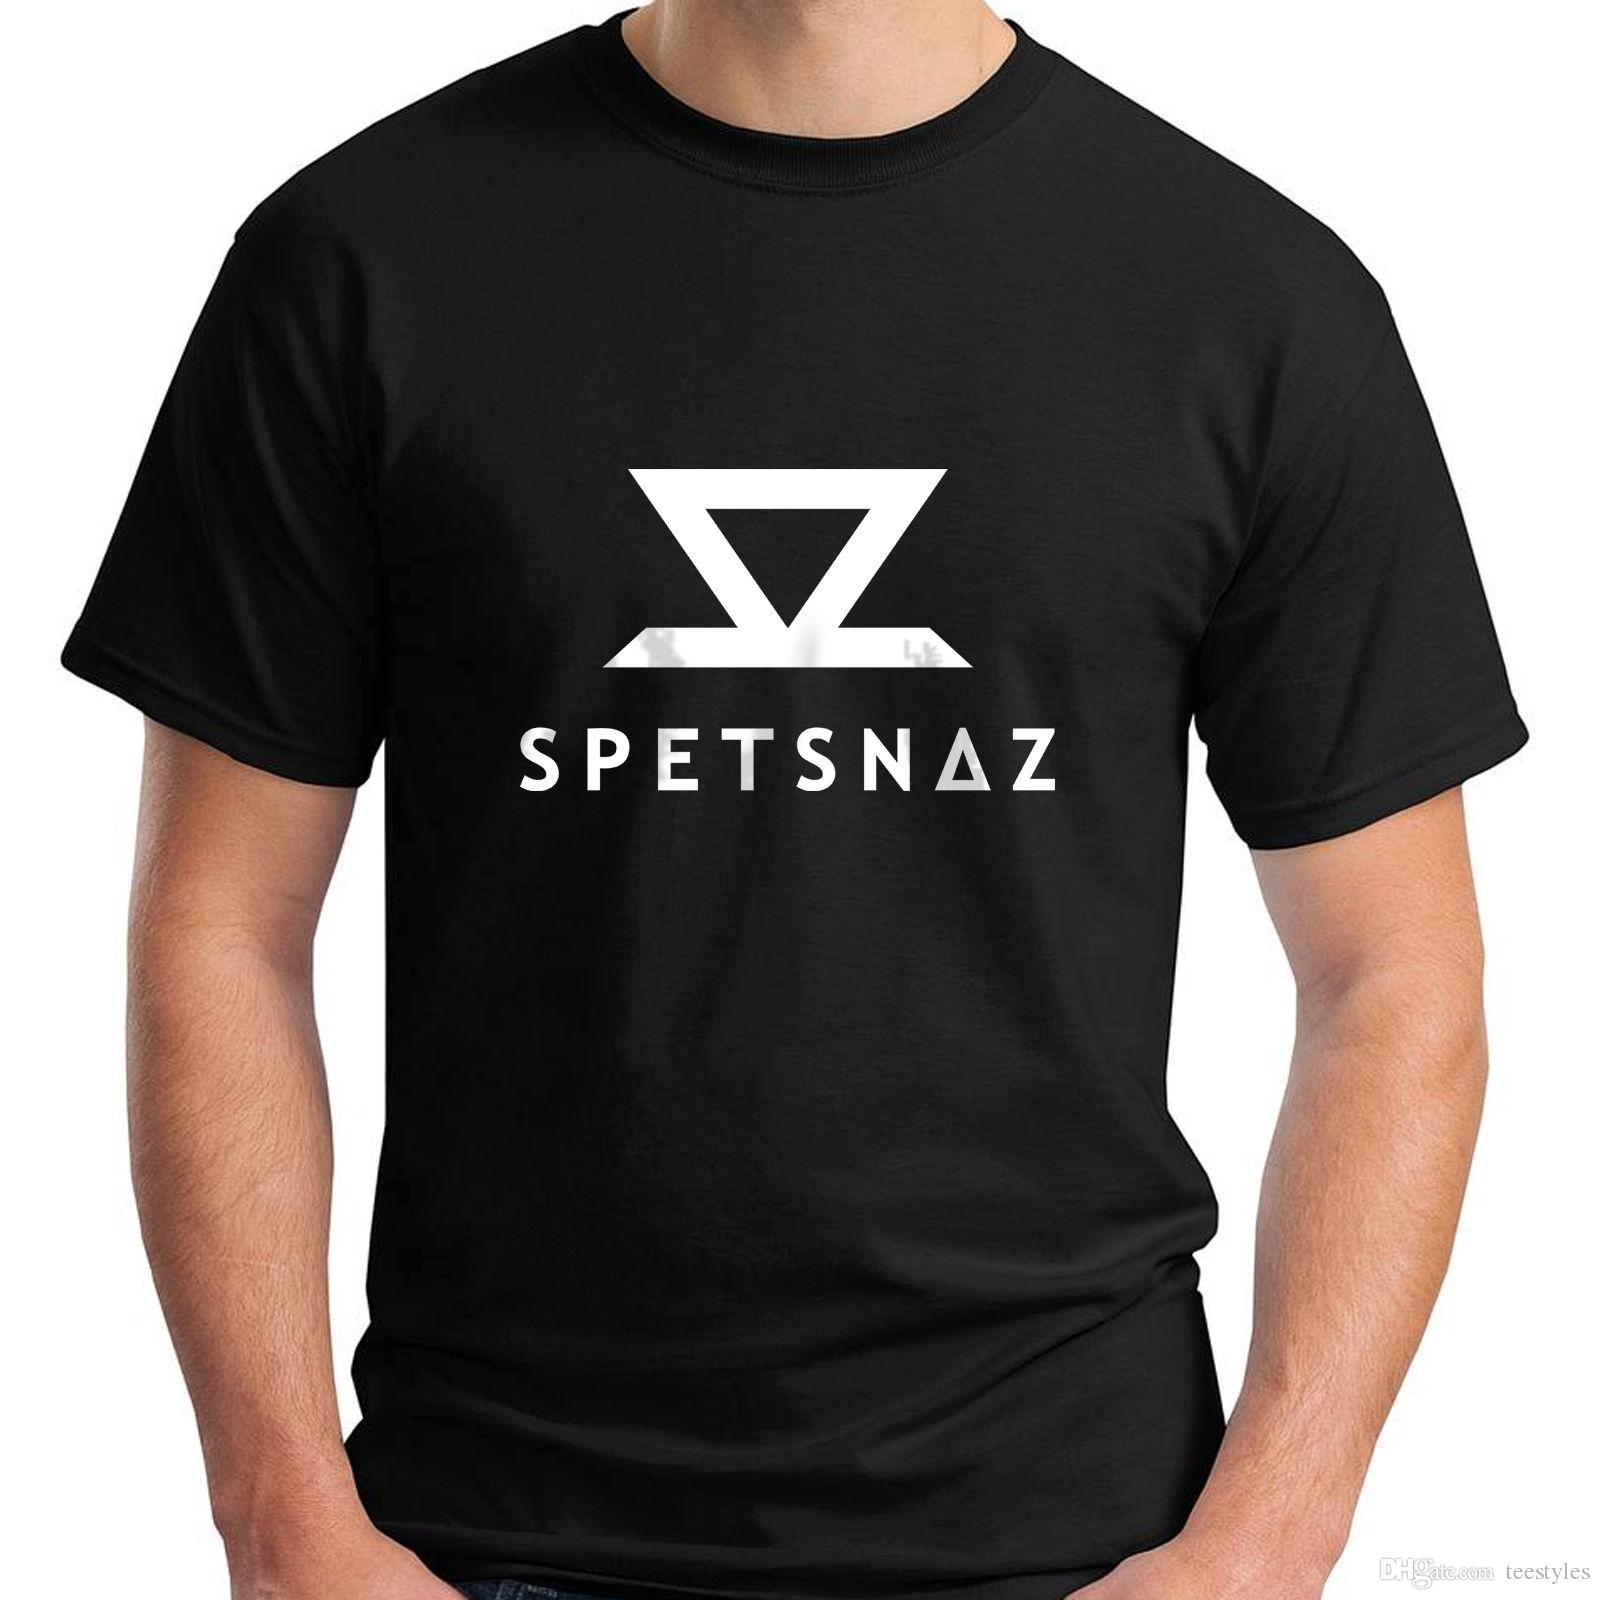 Spetsnaz Logo - New Spetsnaz Logo Short Sleeve Black Men'S T Shirt S 5Xl Tee Shirt ...